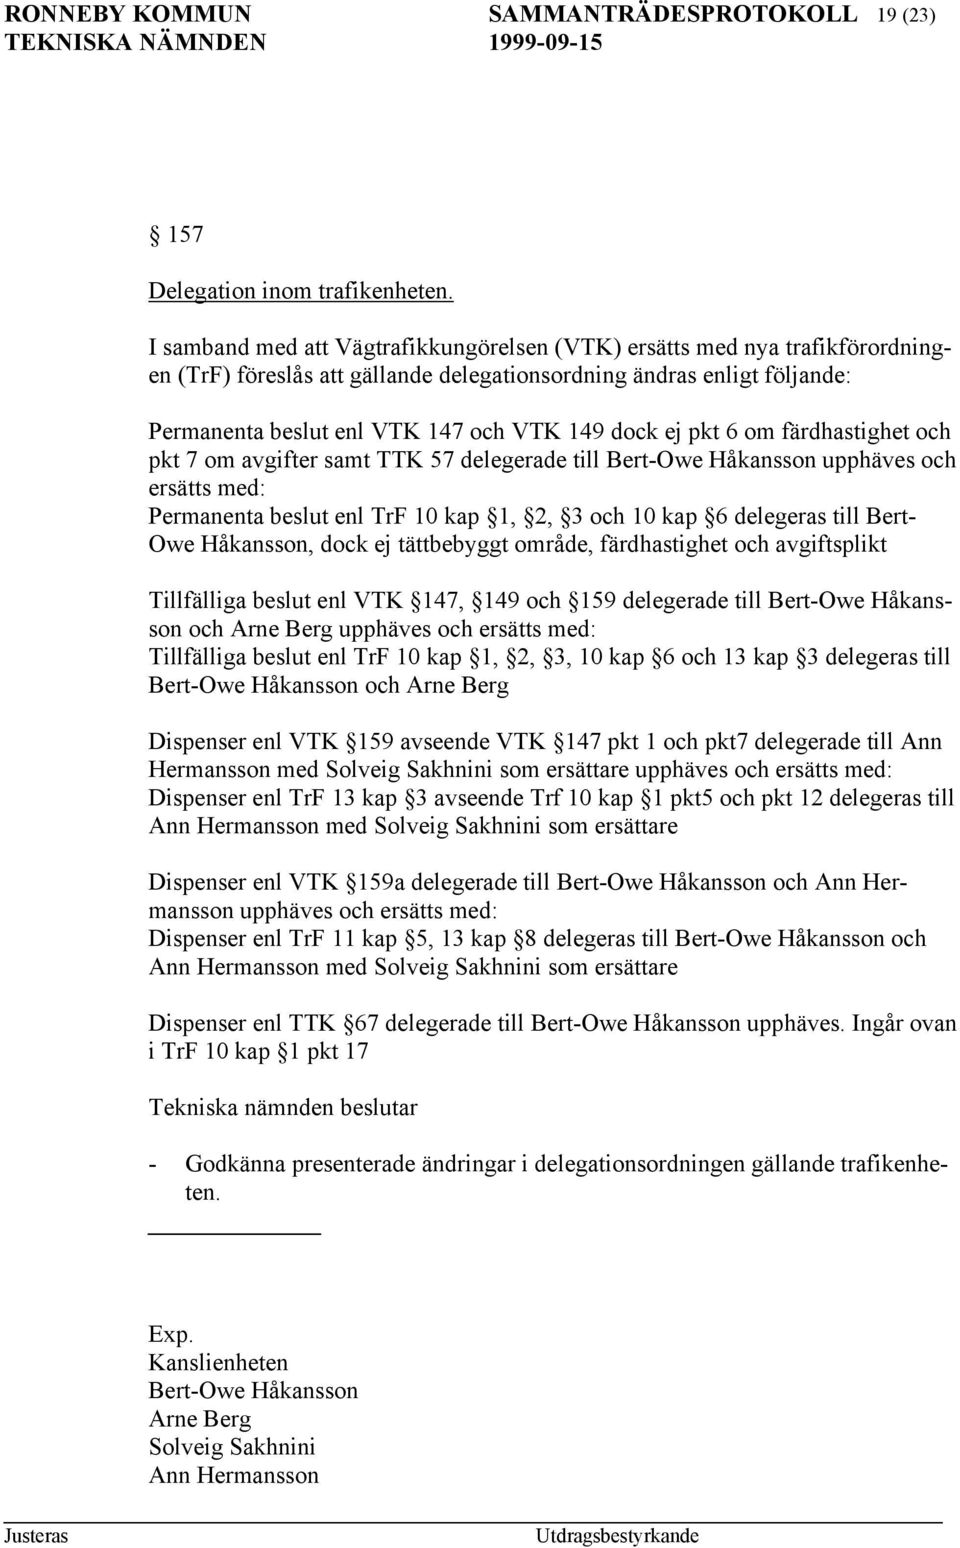 ej pkt 6 om färdhastighet och pkt 7 om avgifter samt TTK 57 delegerade till Bert-Owe Håkansson upphäves och ersätts med: Permanenta beslut enl TrF 10 kap 1, 2, 3 och 10 kap 6 delegeras till Bert- Owe